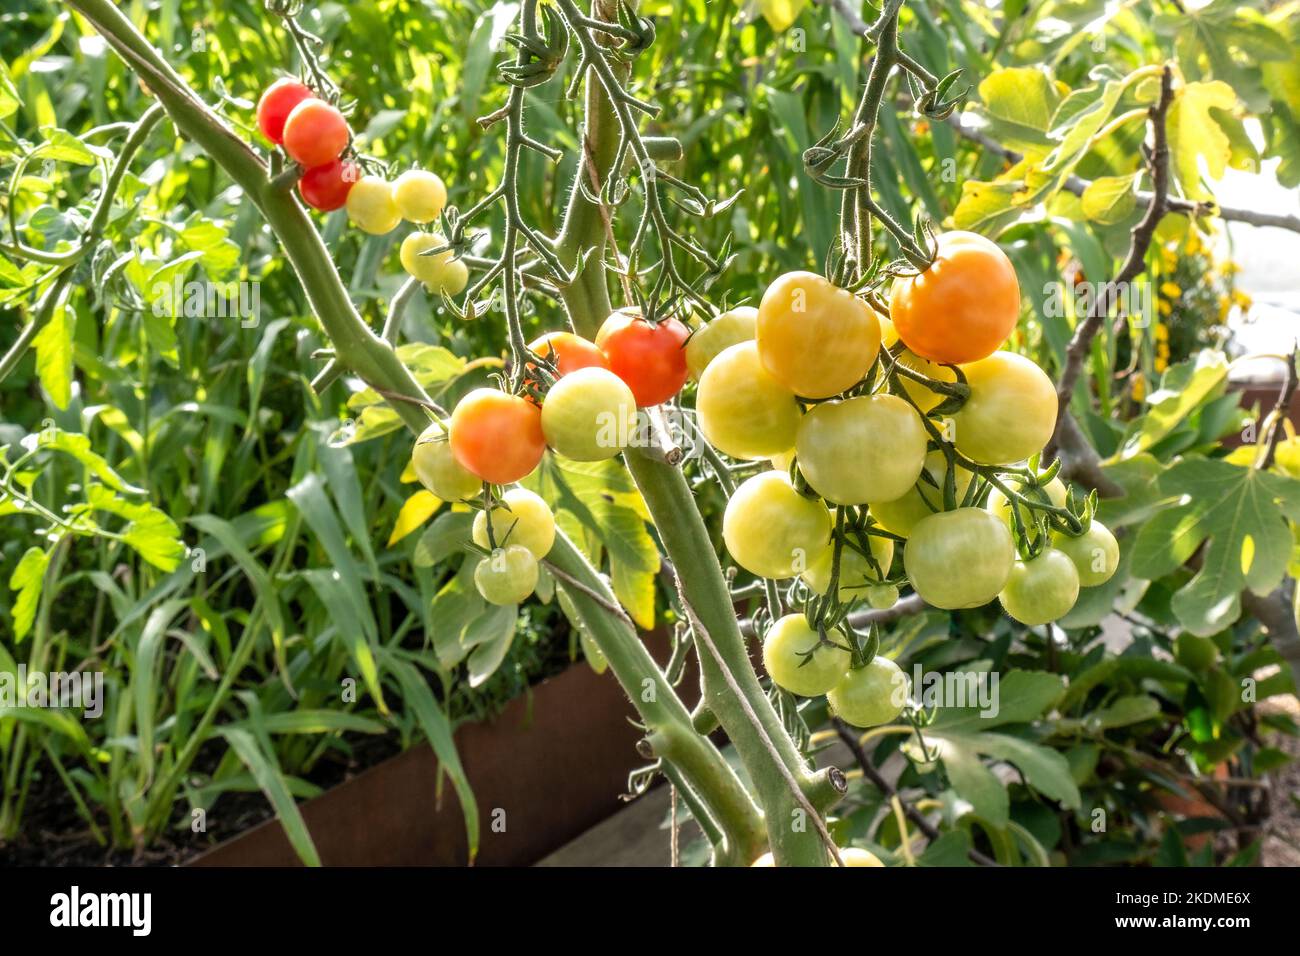 Tomates « Crimson Cherry F1 mûrissement sur la vigne », tomates cerises résistantes à la brûlure, résistance au Fusarium et au Verticillium. Variété parfaite pour b Banque D'Images